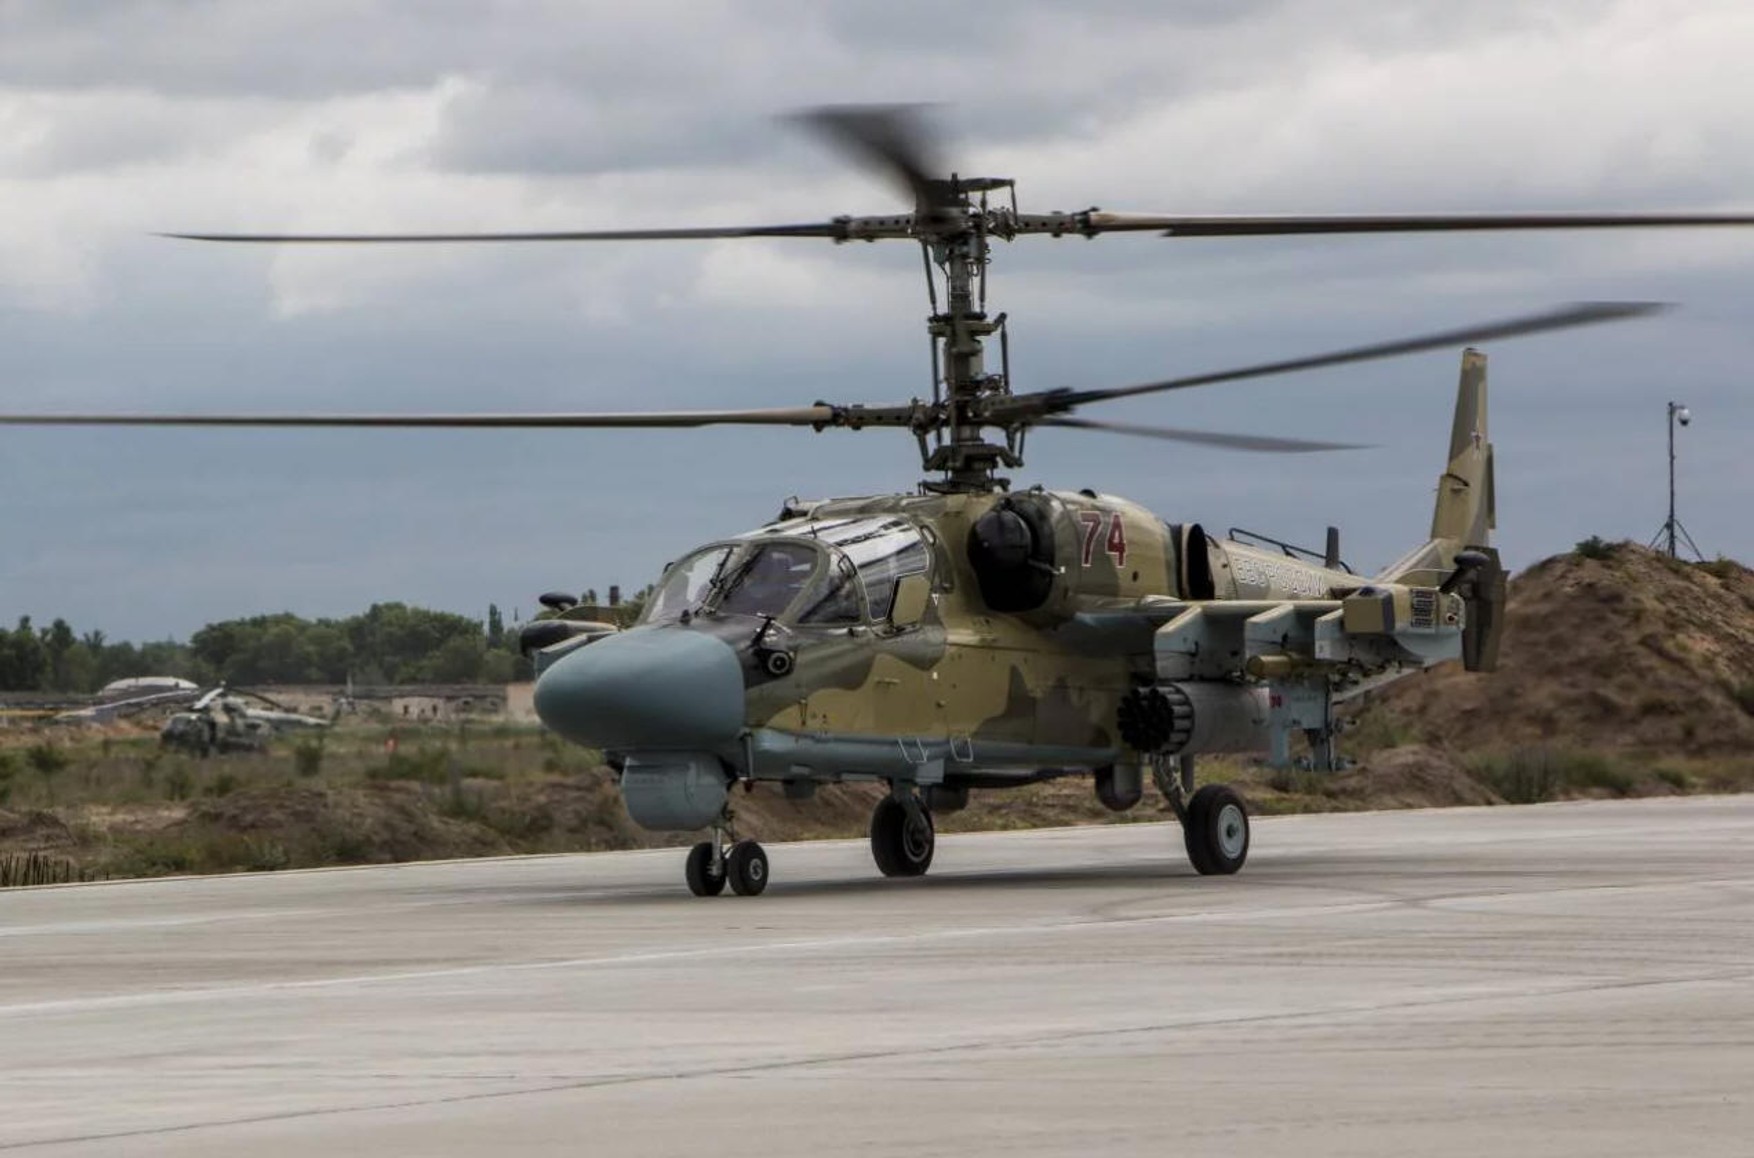 Украинцы провели успешную диверсию в 600 км от российско-украинской границы. Были уничтожены два вертолета Ка-52 ВКС РФ